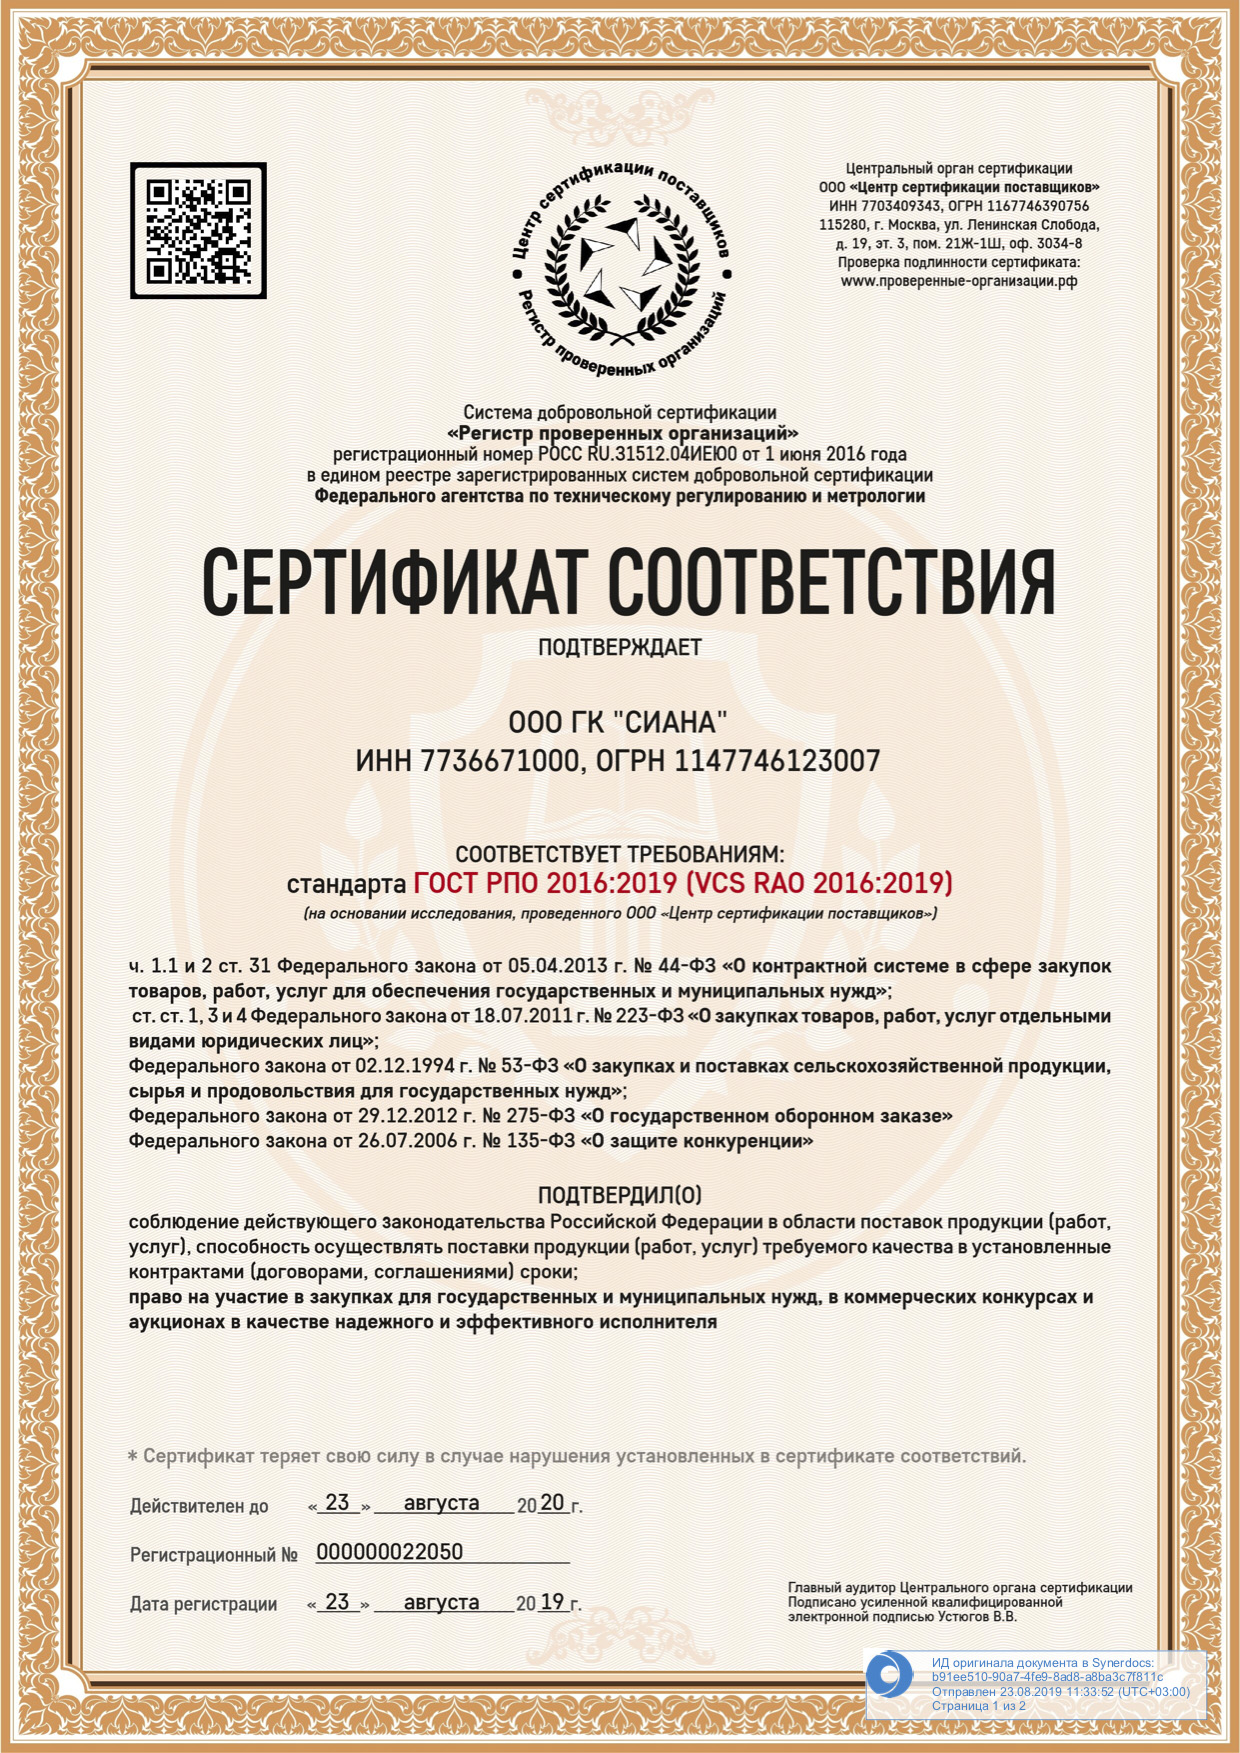 Сертификат соответствия ГК «Сиана»